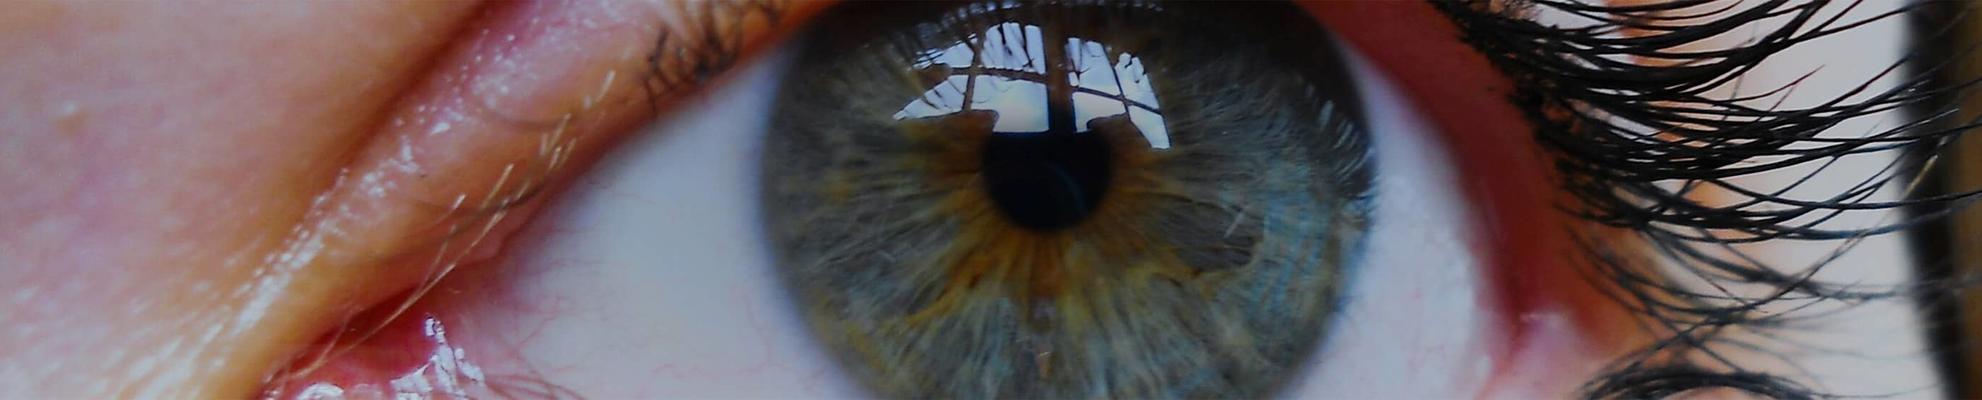 Closeup of a woman’s eye